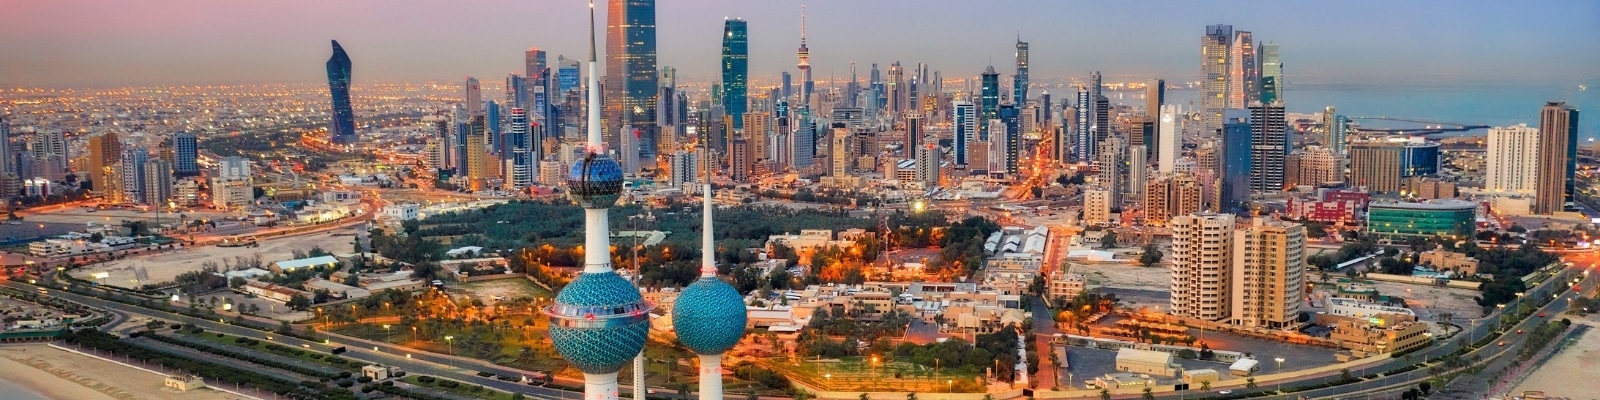 digital marketing courses in Kuwait